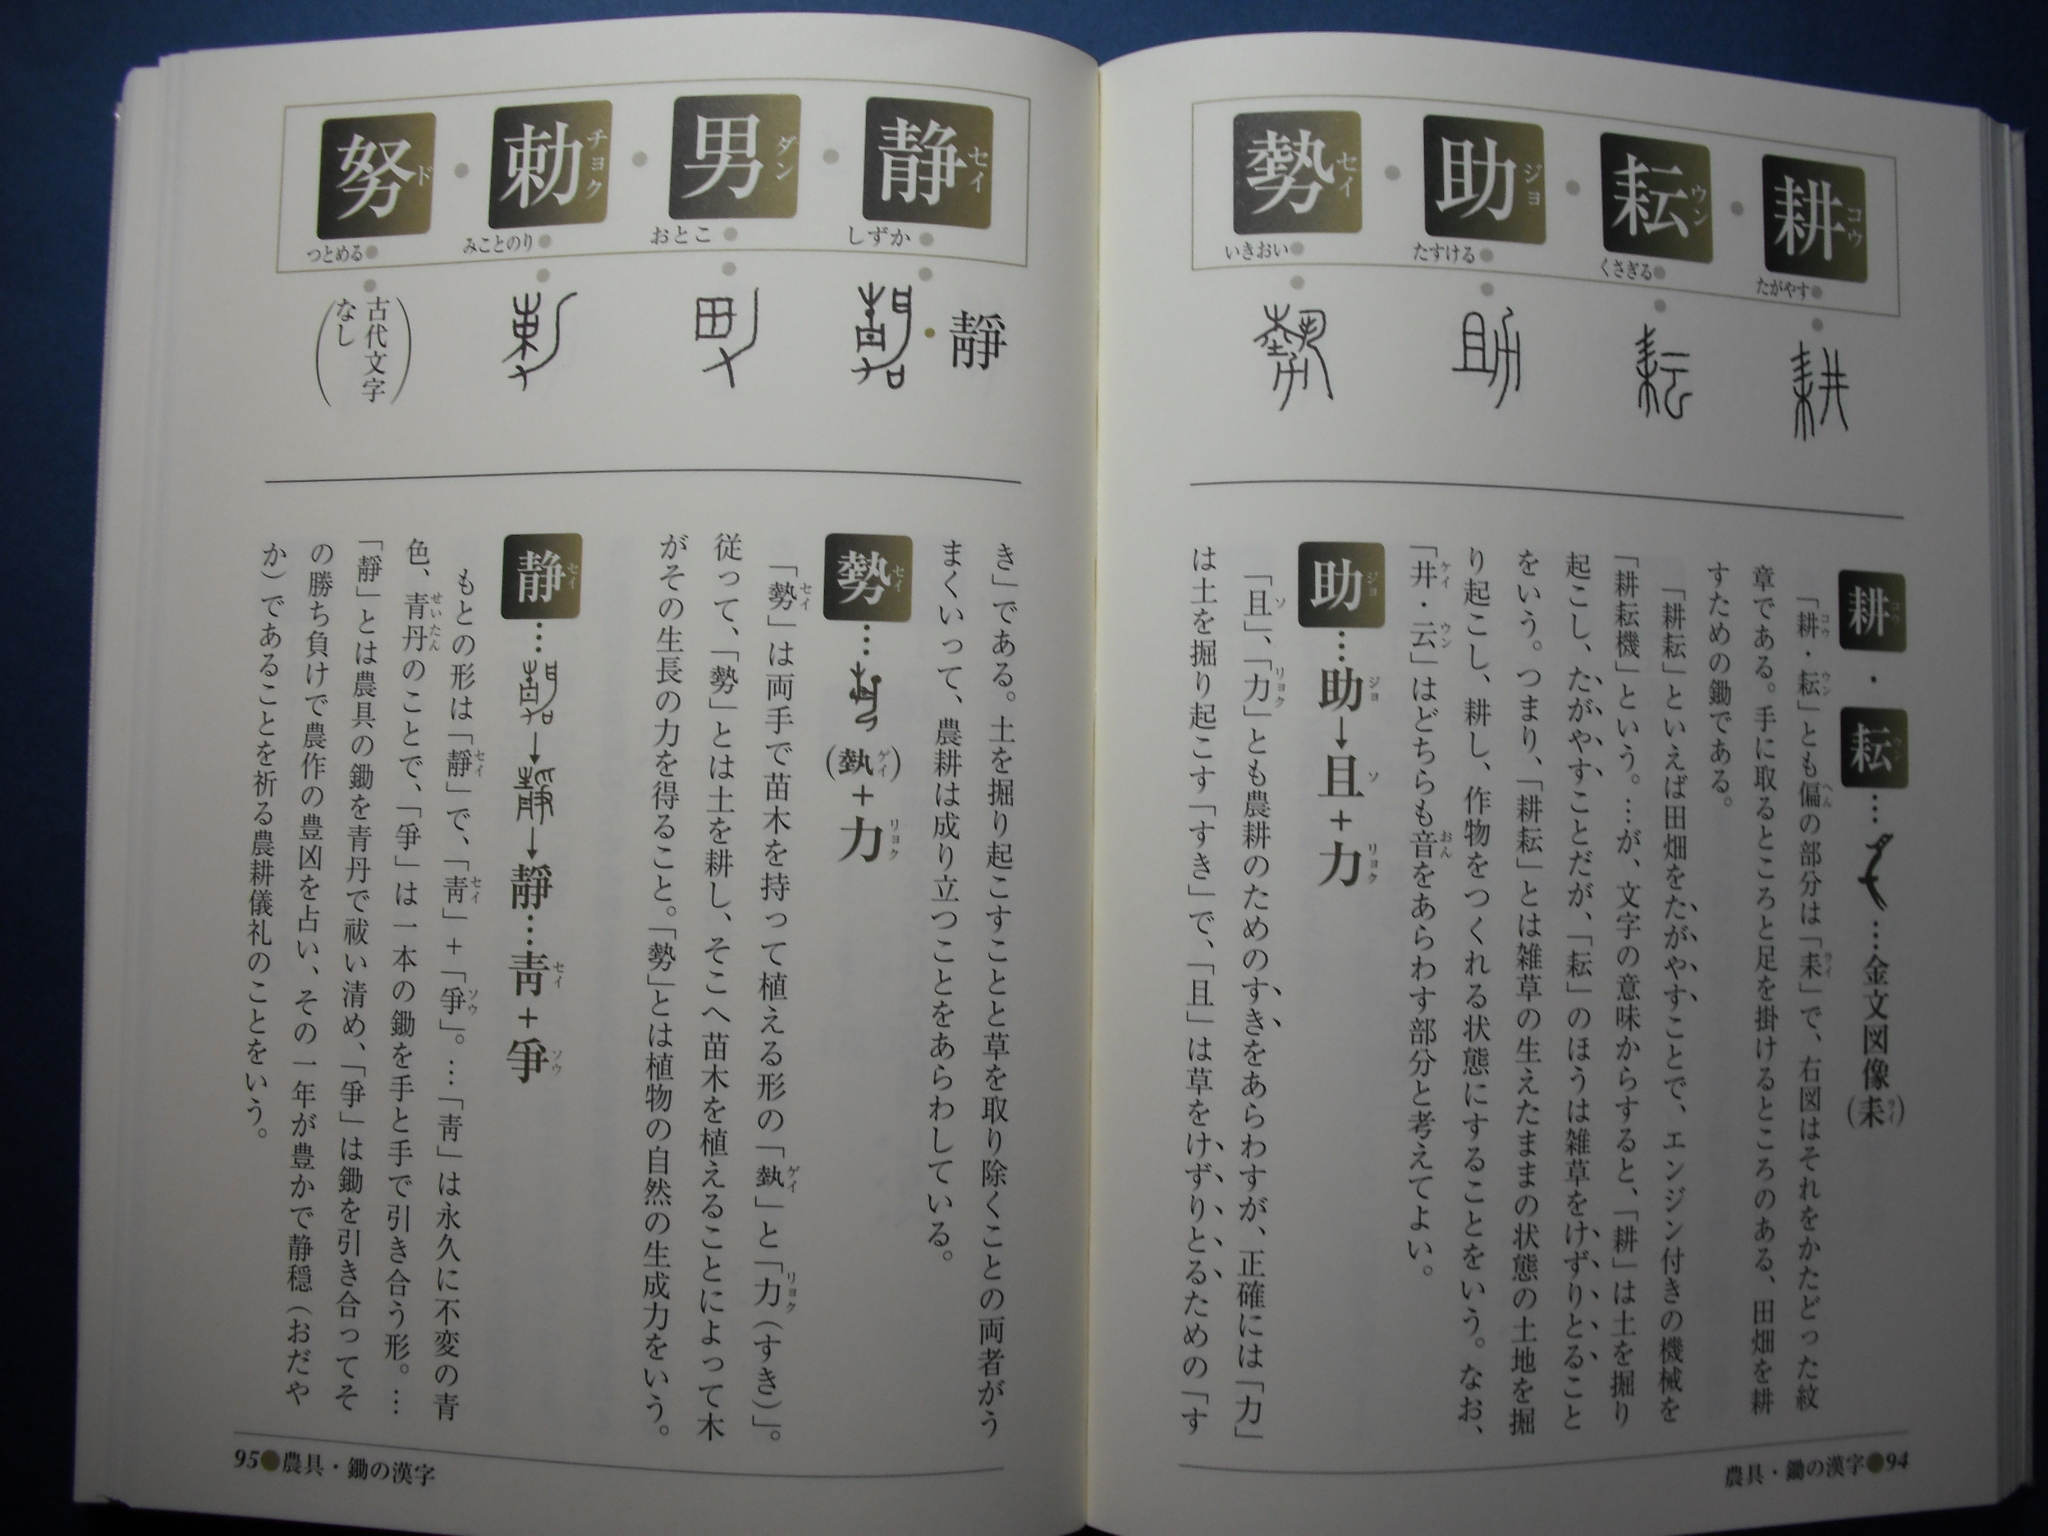 成り立ちで知る漢字のおもしろ世界 道具 家 まち編 伊東信夫著 大伴家持晩年歌集 保存版